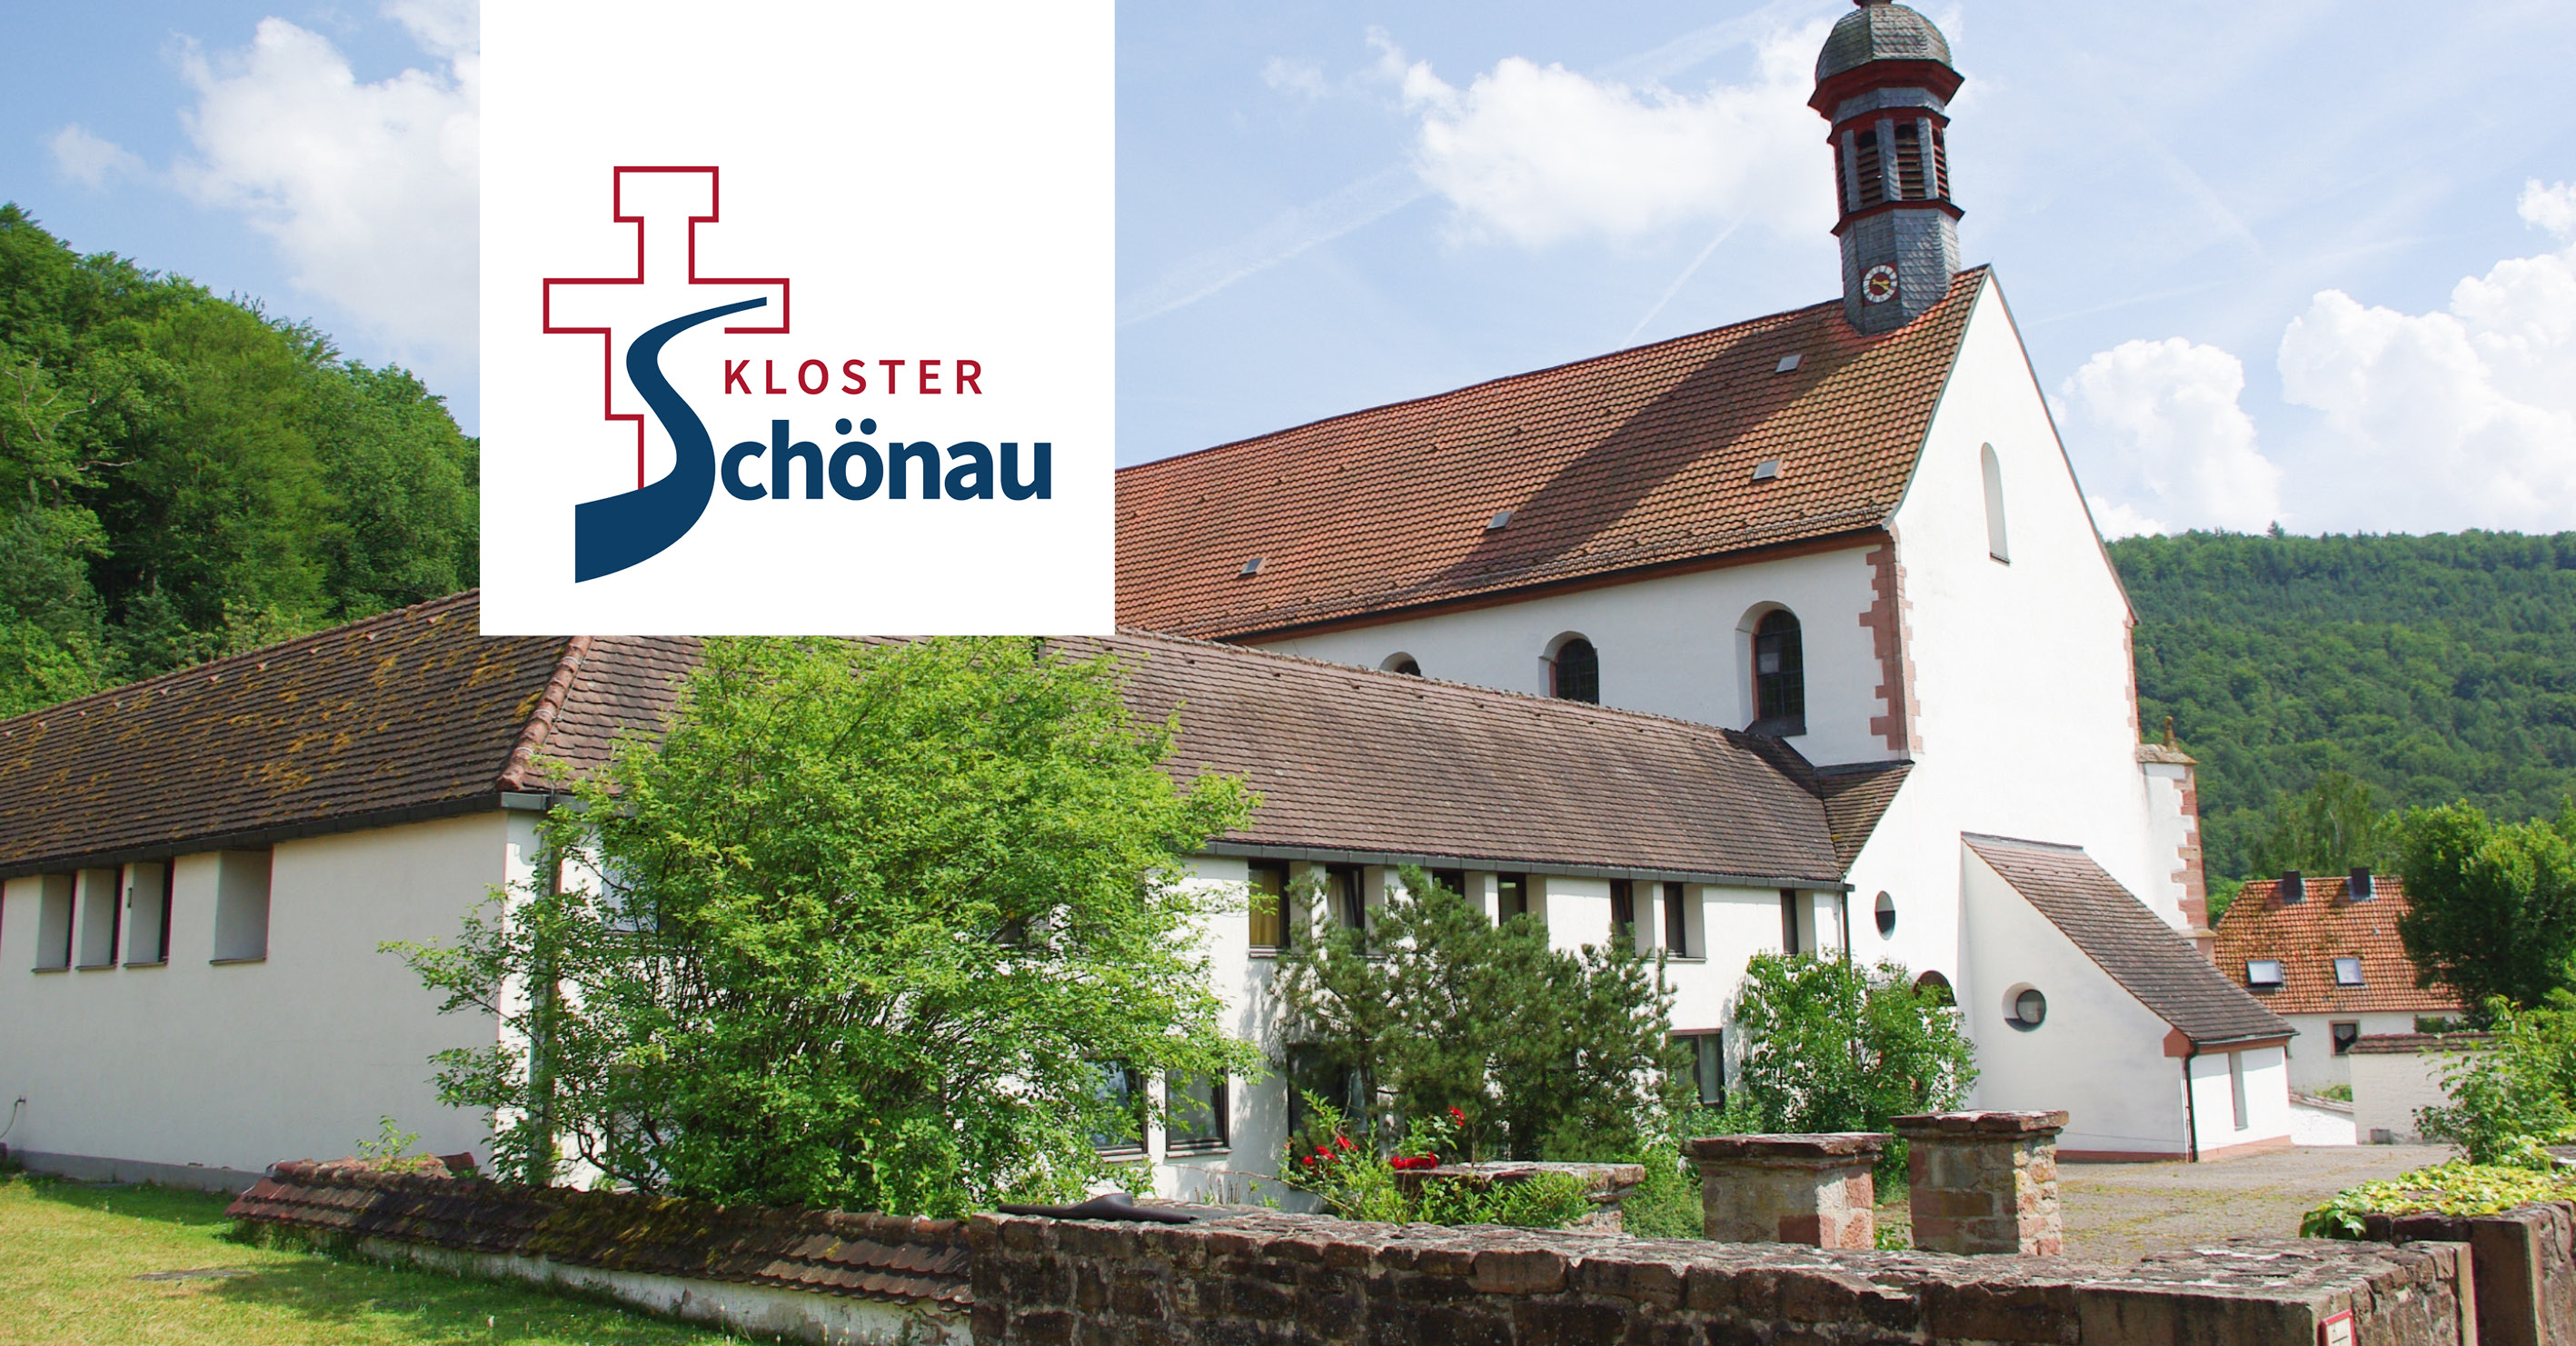 (c) Kloster-schoenau.de